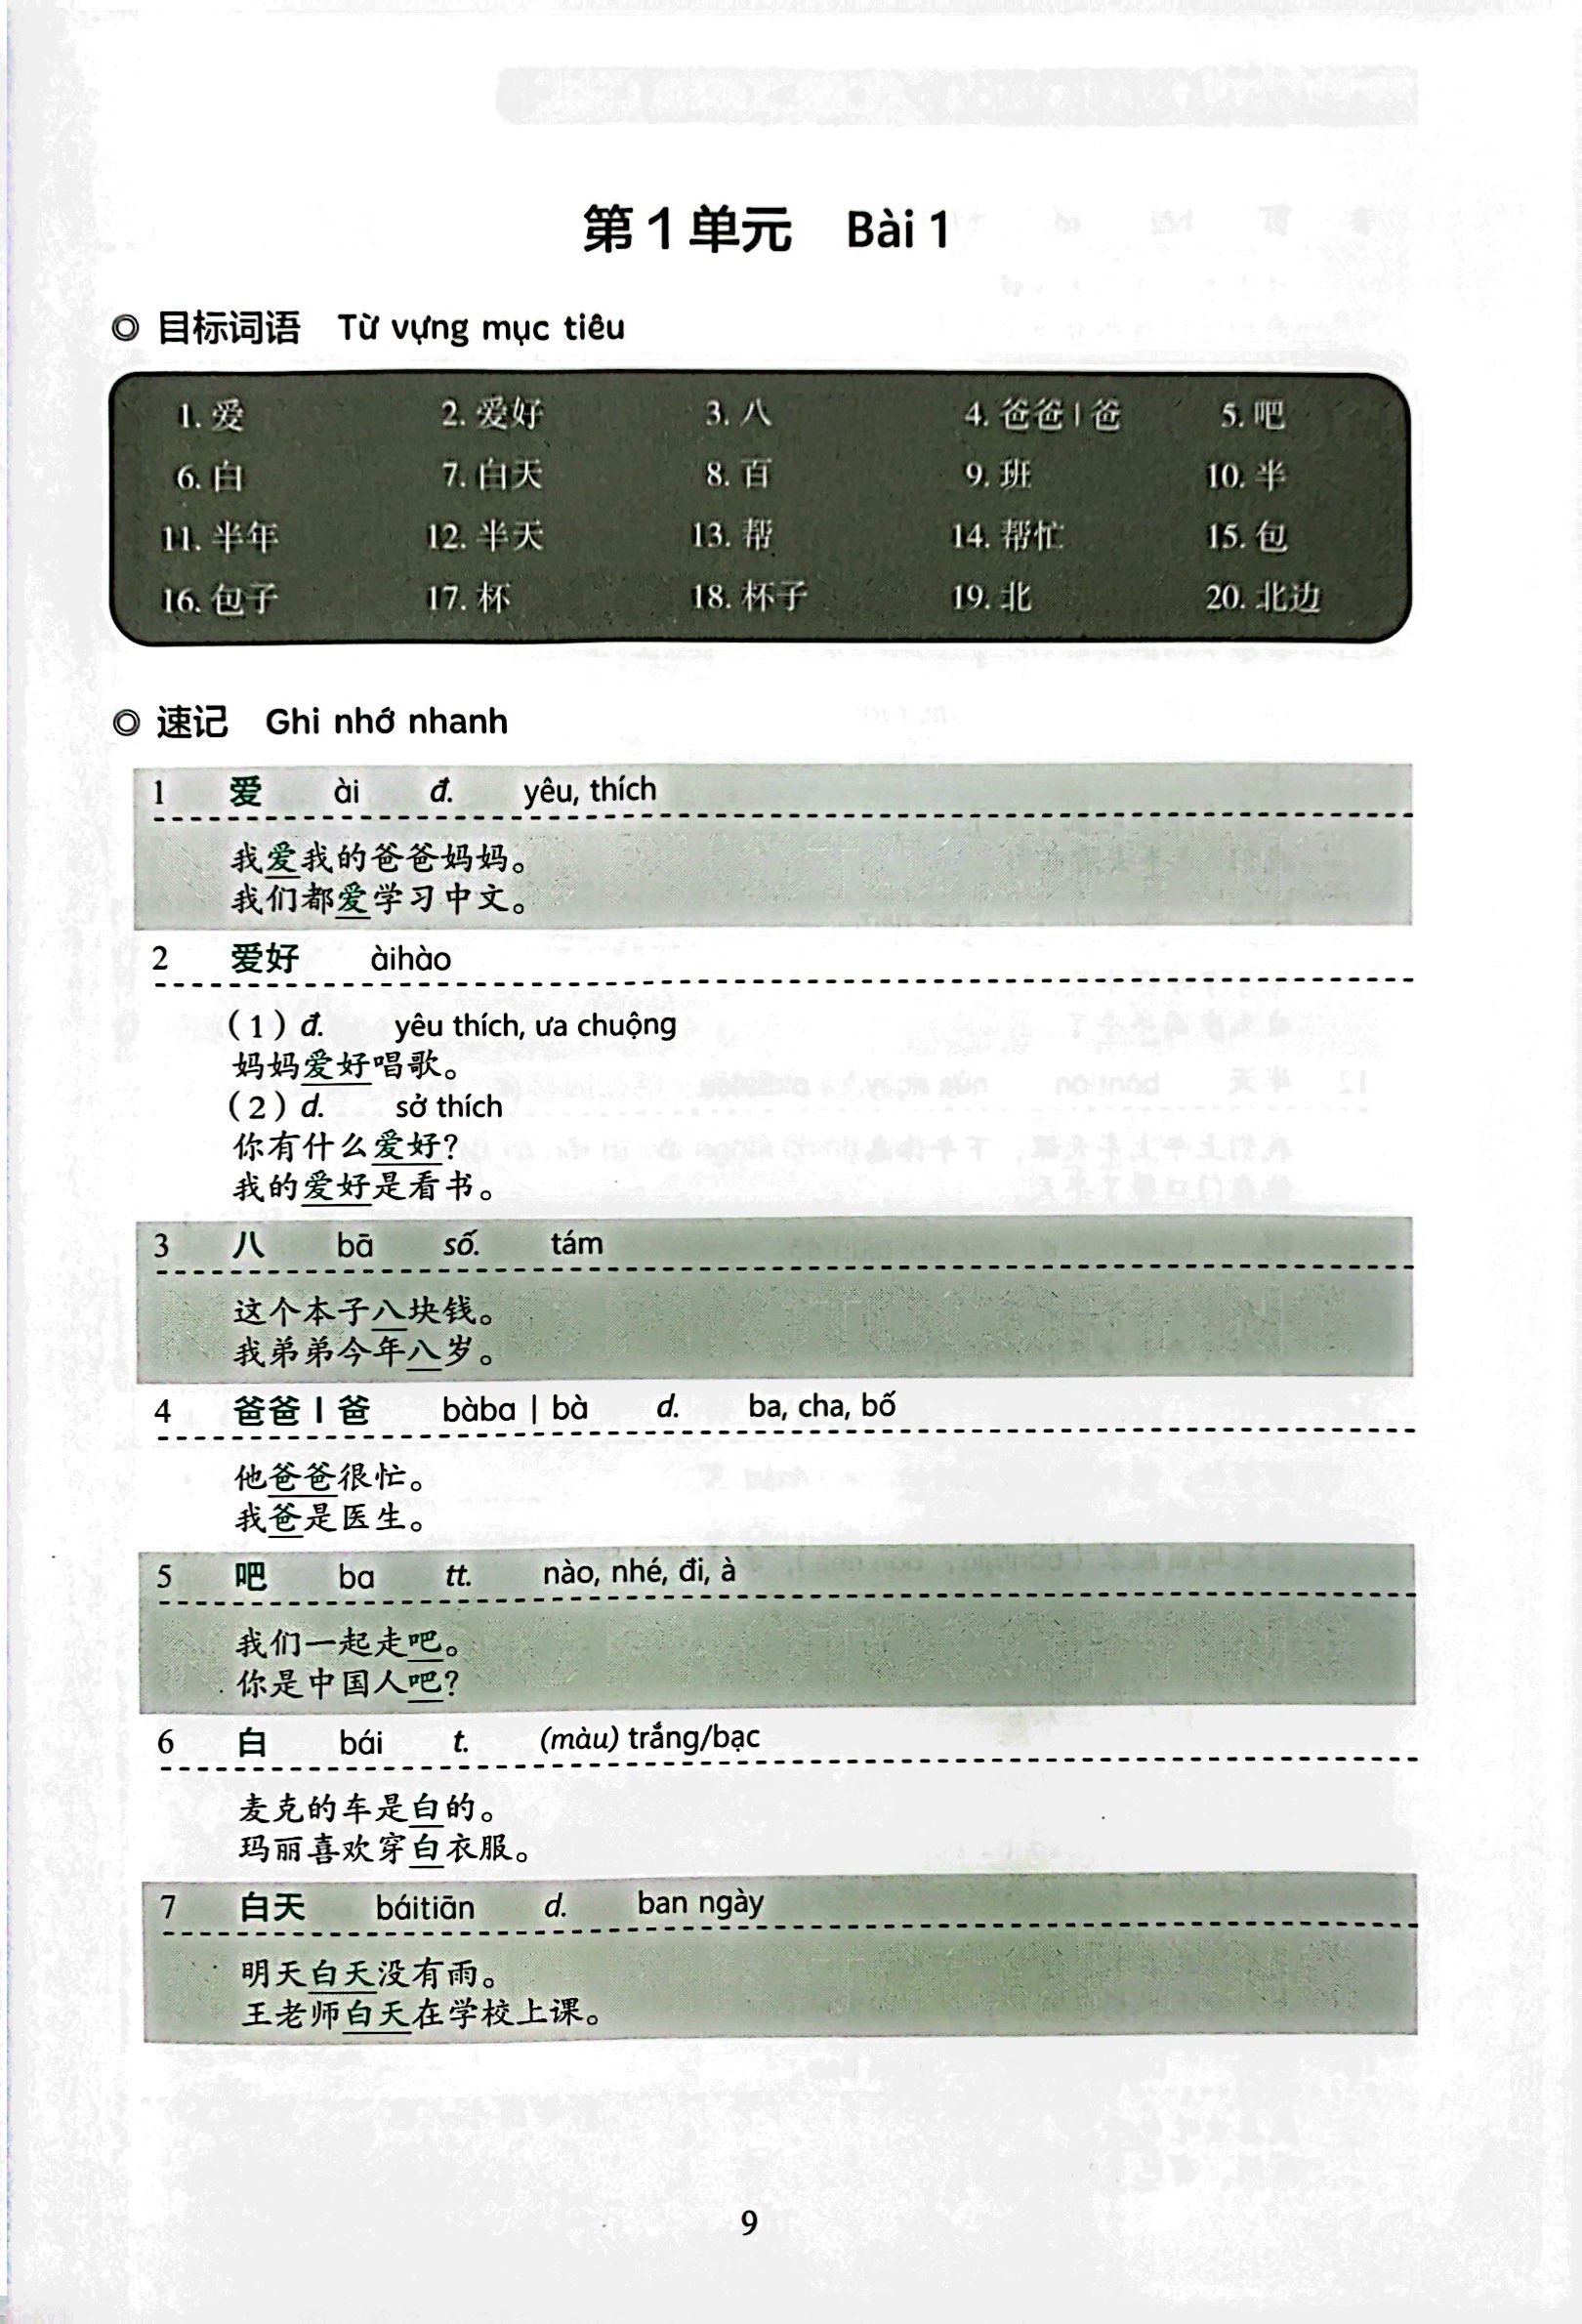 Tiêu Chuẩn Các Cấp Độ Tiếng Trung Trong Giáo Dục Tiếng Trung Quốc Tế - Giáo Trình Luyện Và Nhớ Nhanh Từ Vựng - Cấp Độ 1 PDF